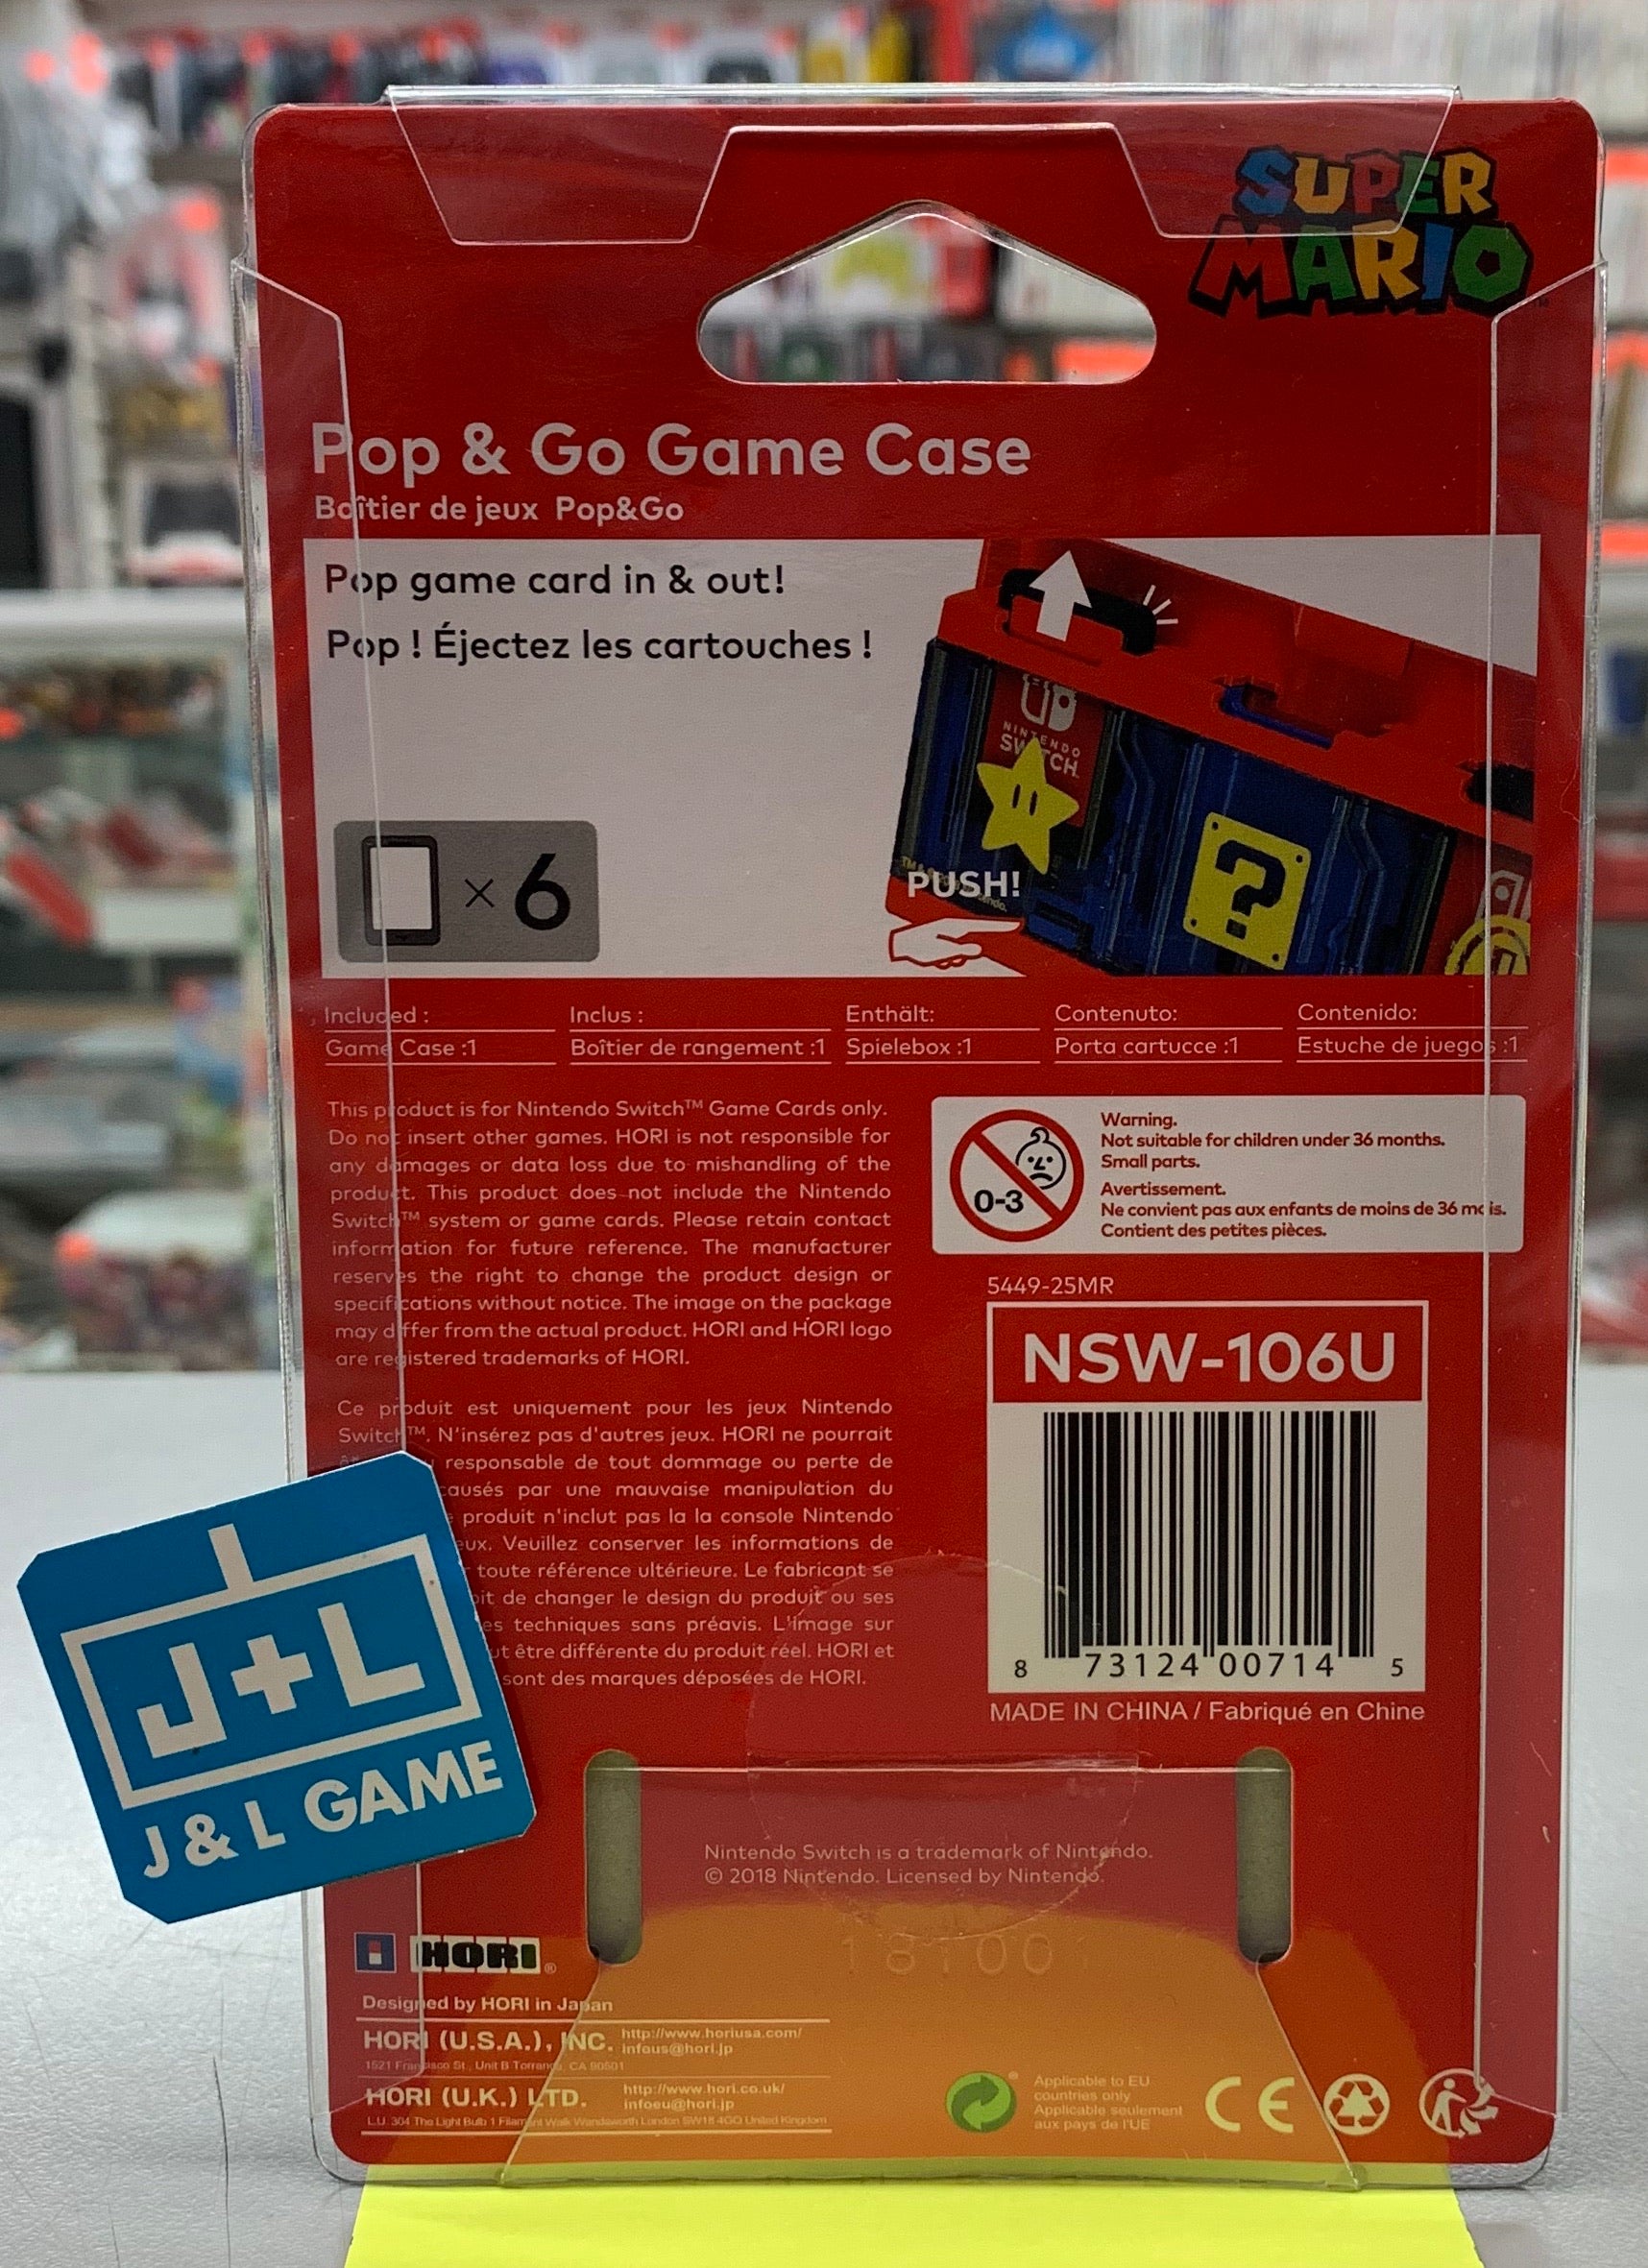 HORI Pop & Go Game Case (Mario) - (NSW) Nintendo Switch Accessories Hori   